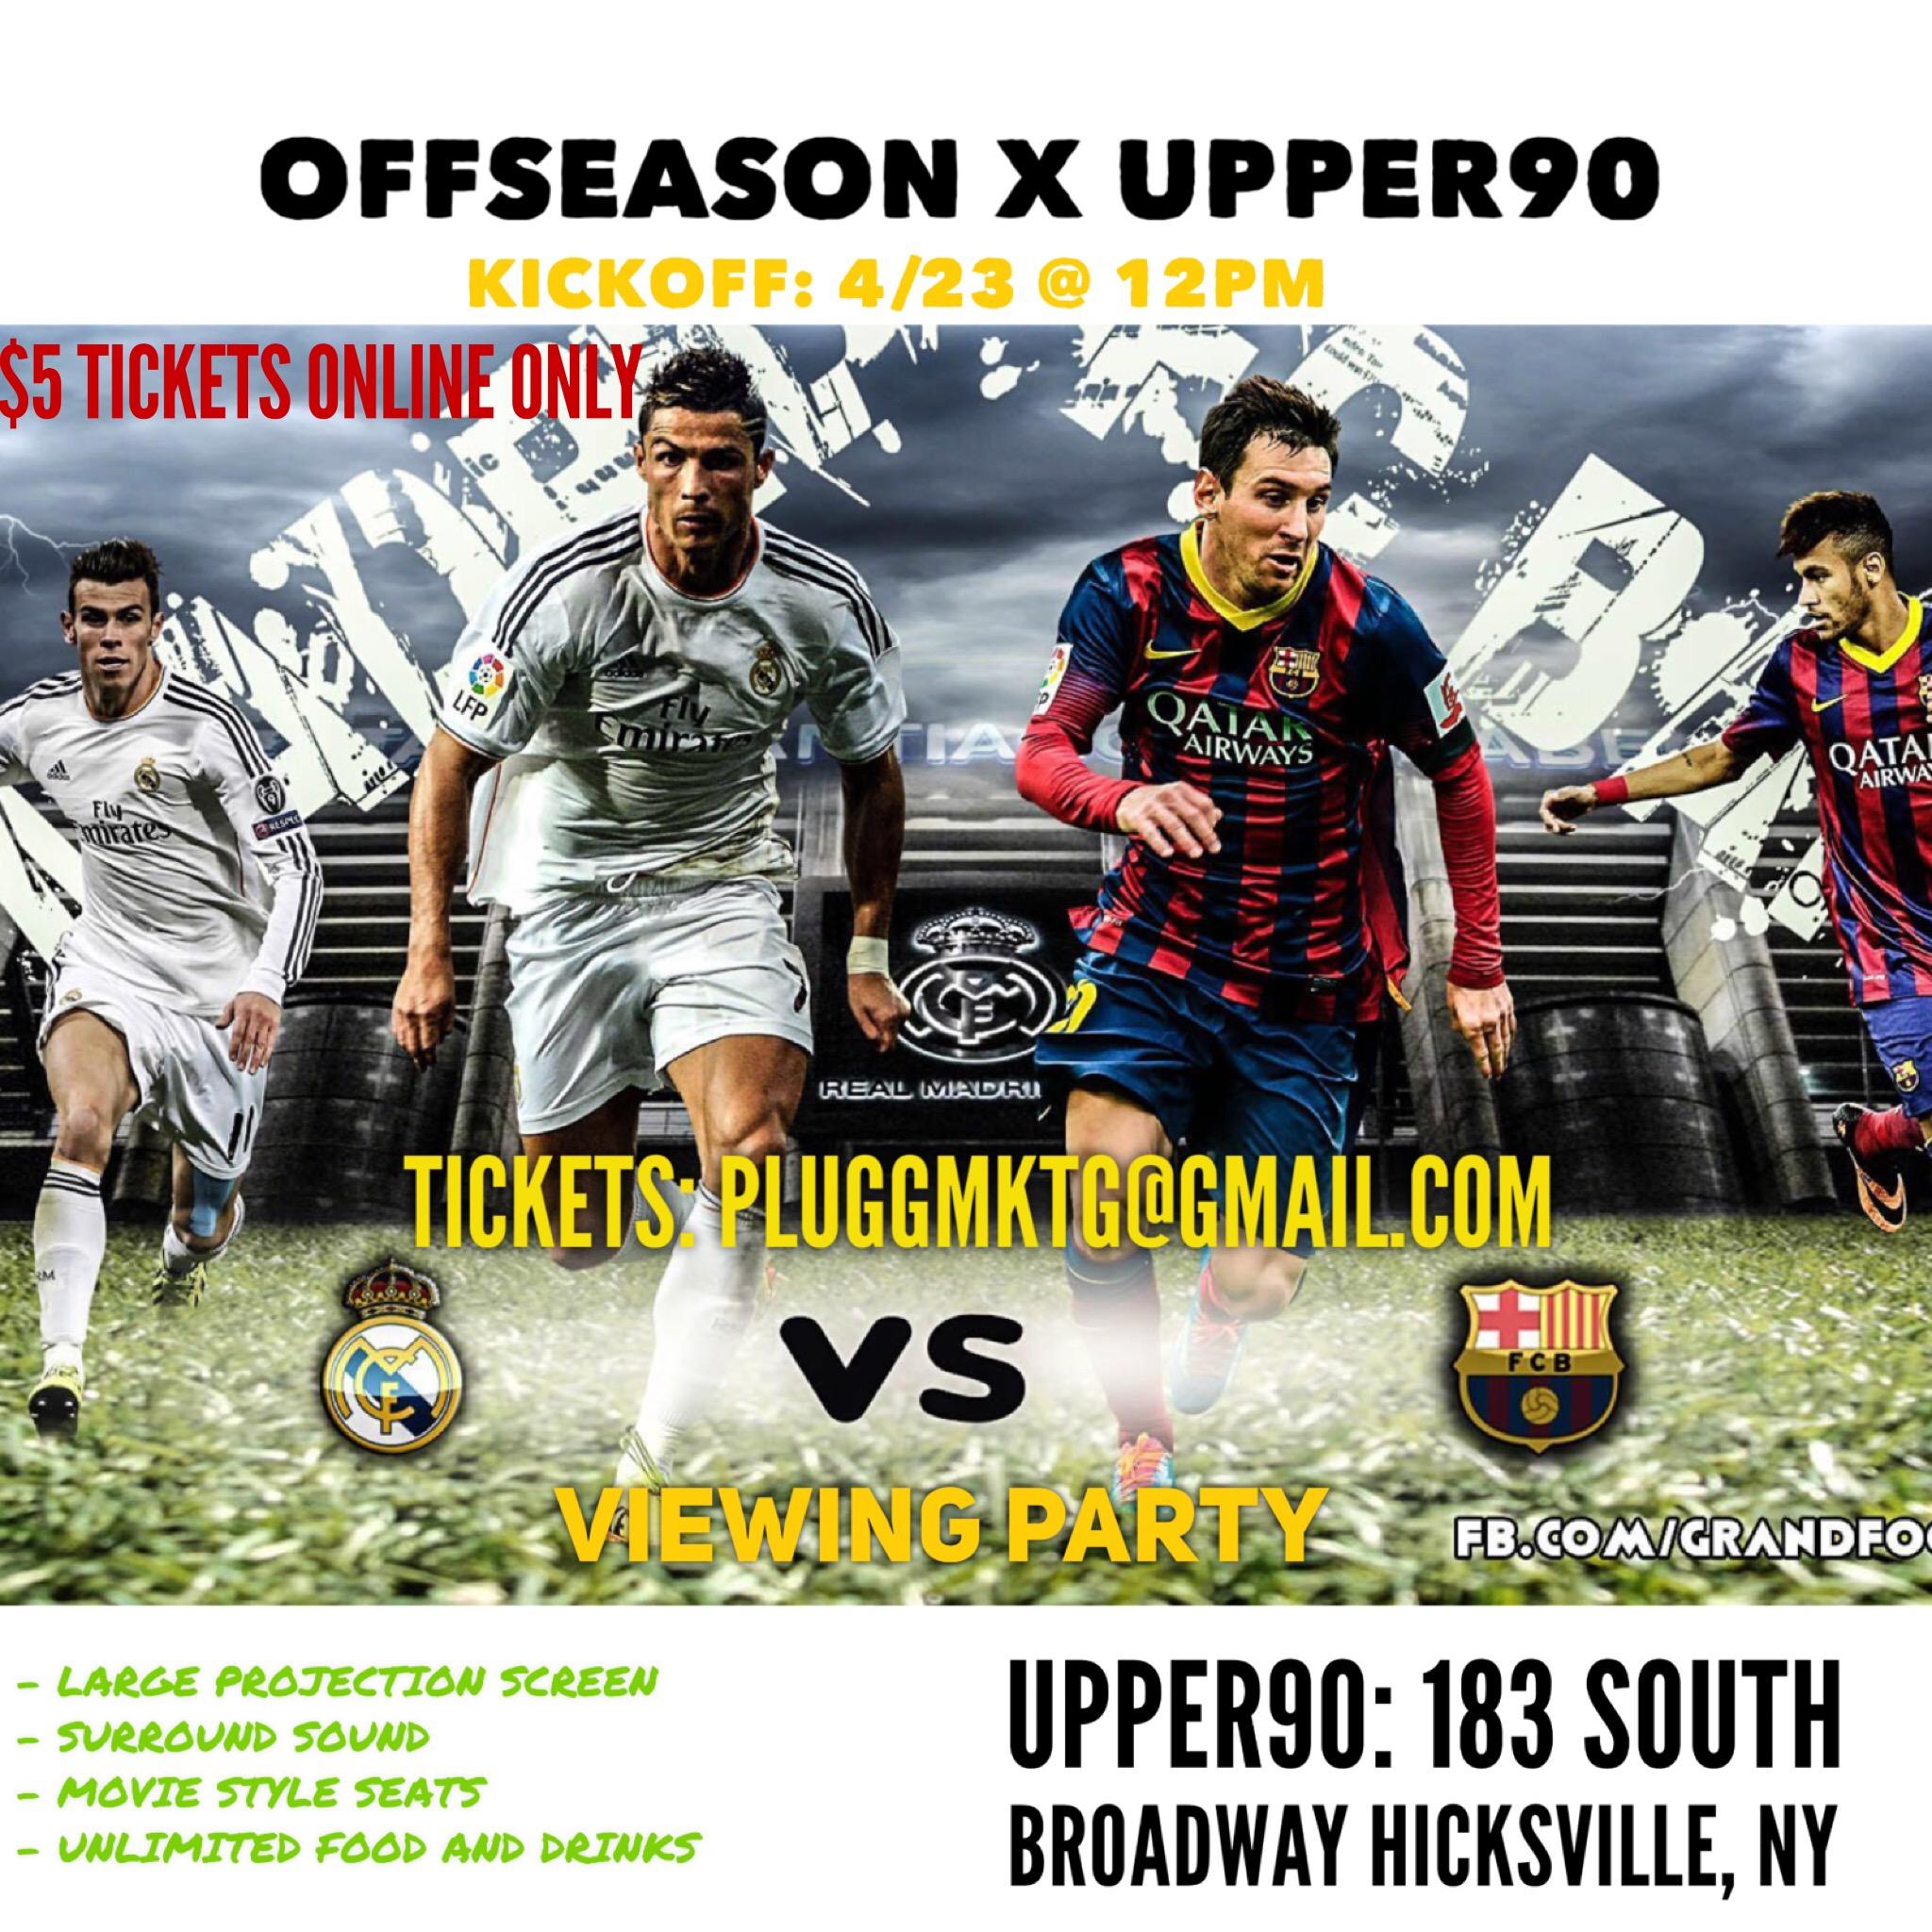 OFFSEASON x UPPER90 - El clasico VIEWING PARTY